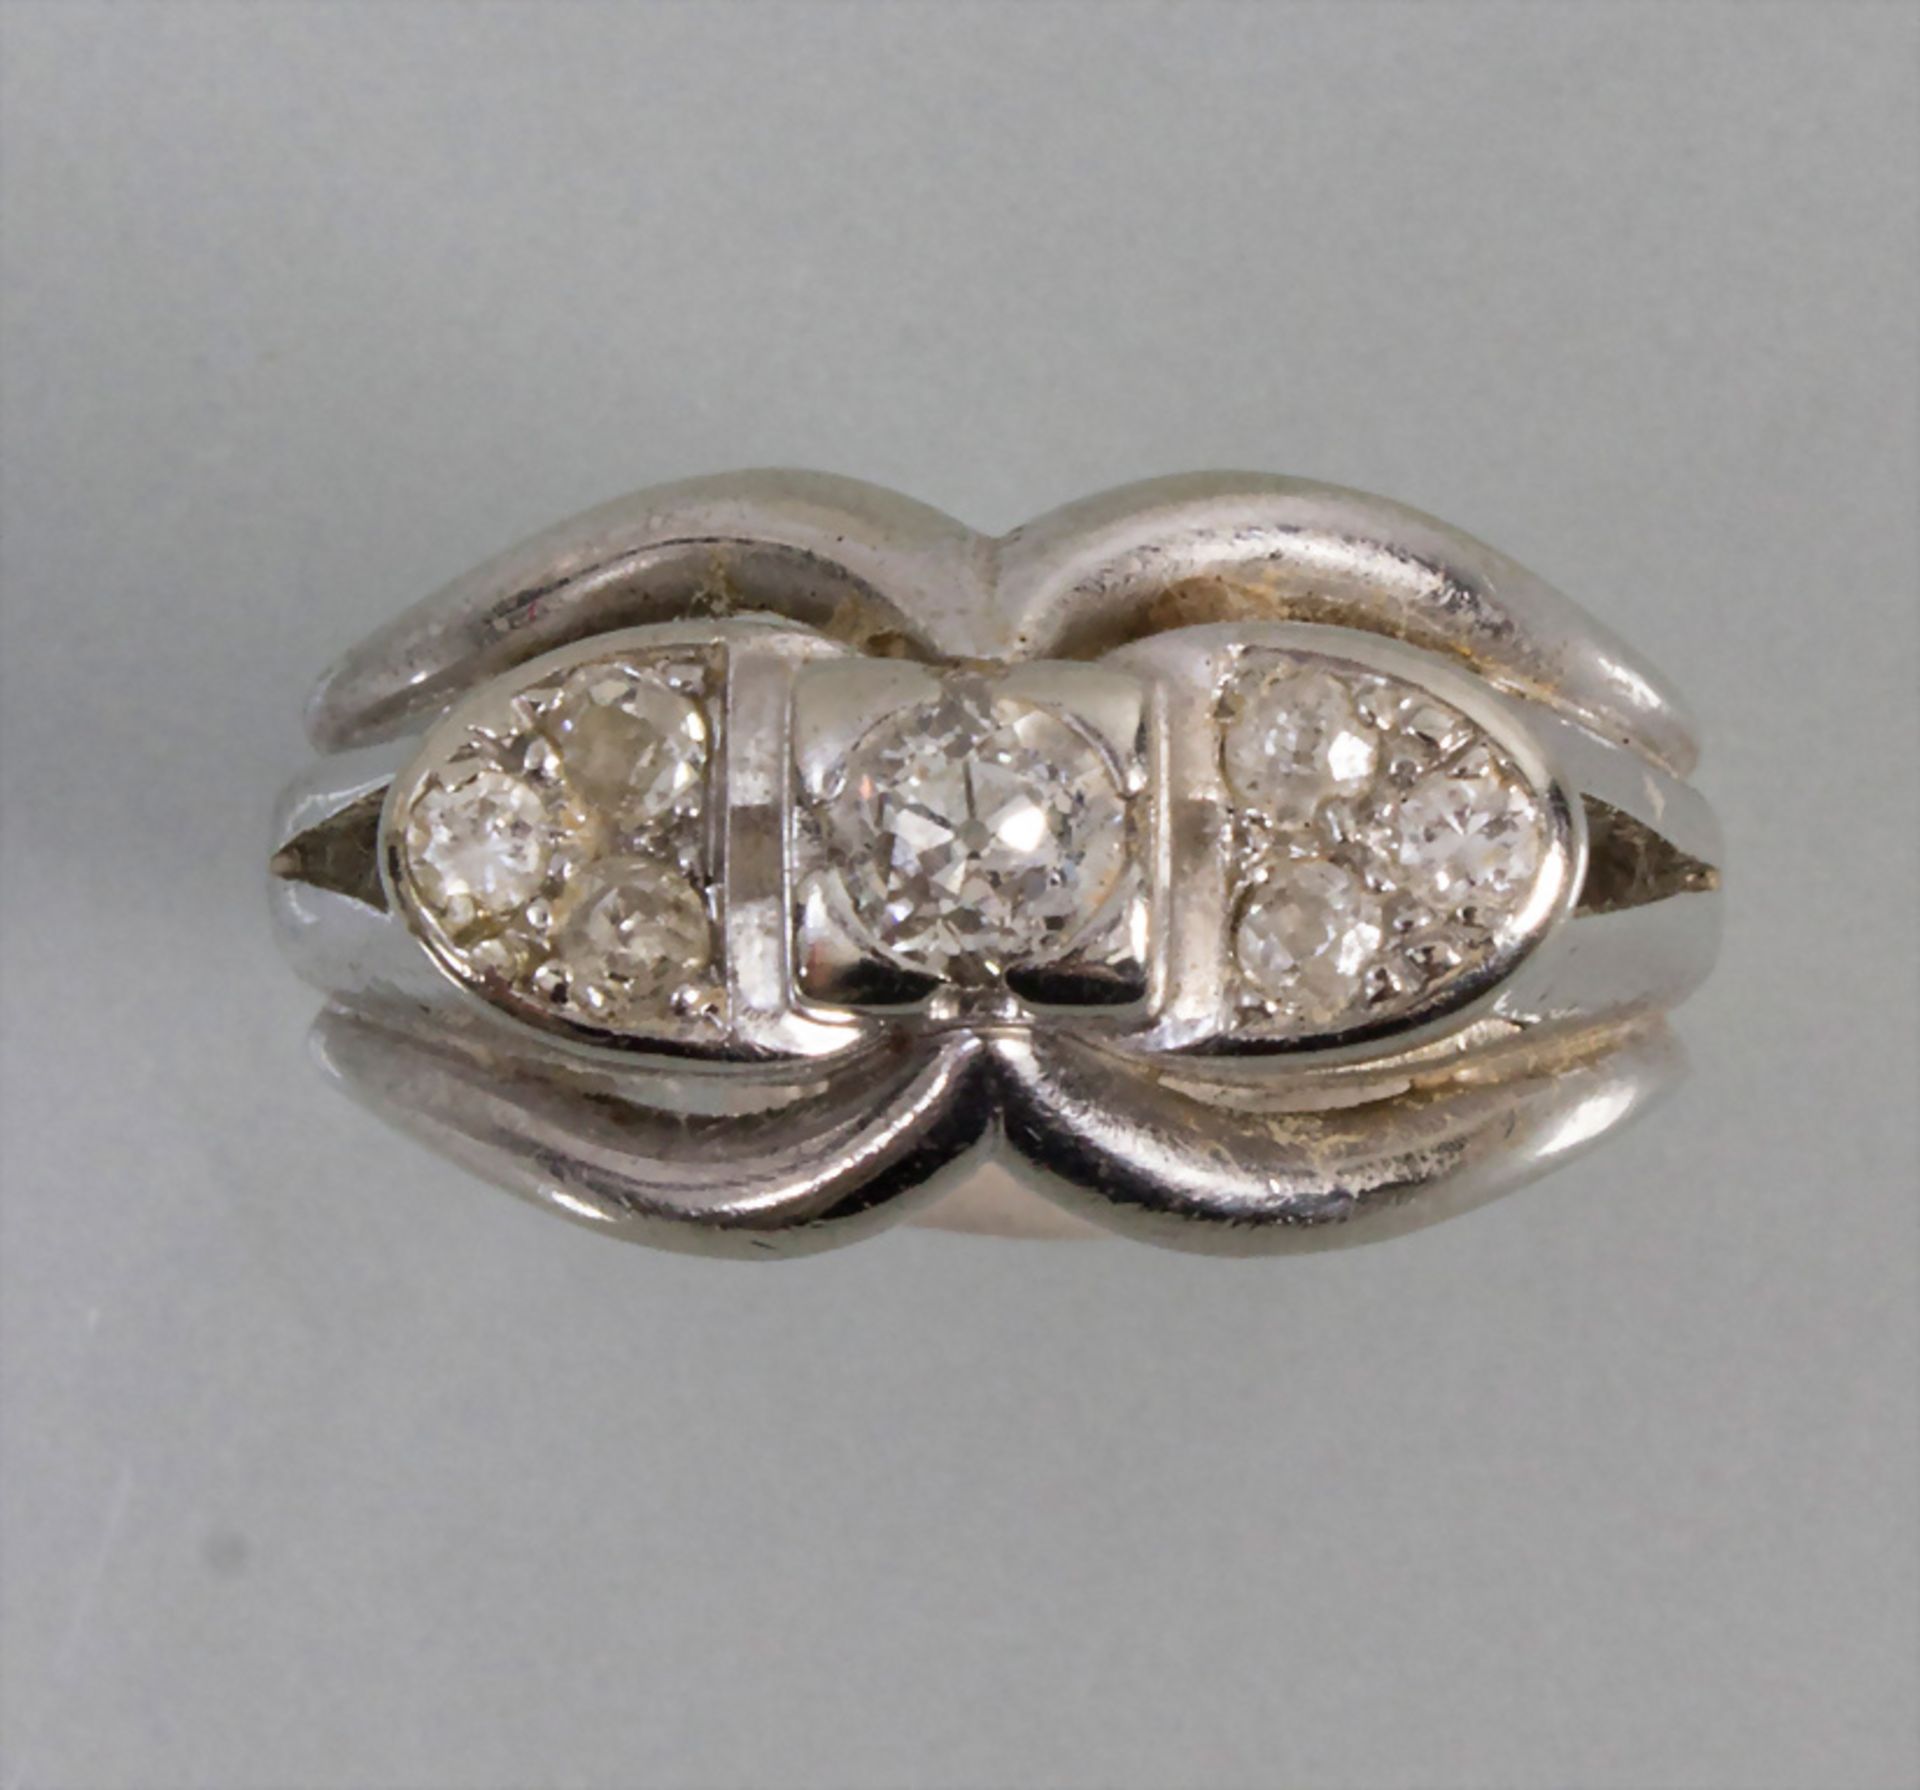 Damenring mit Diamanten / A 14k ladies gold ring with diamonds